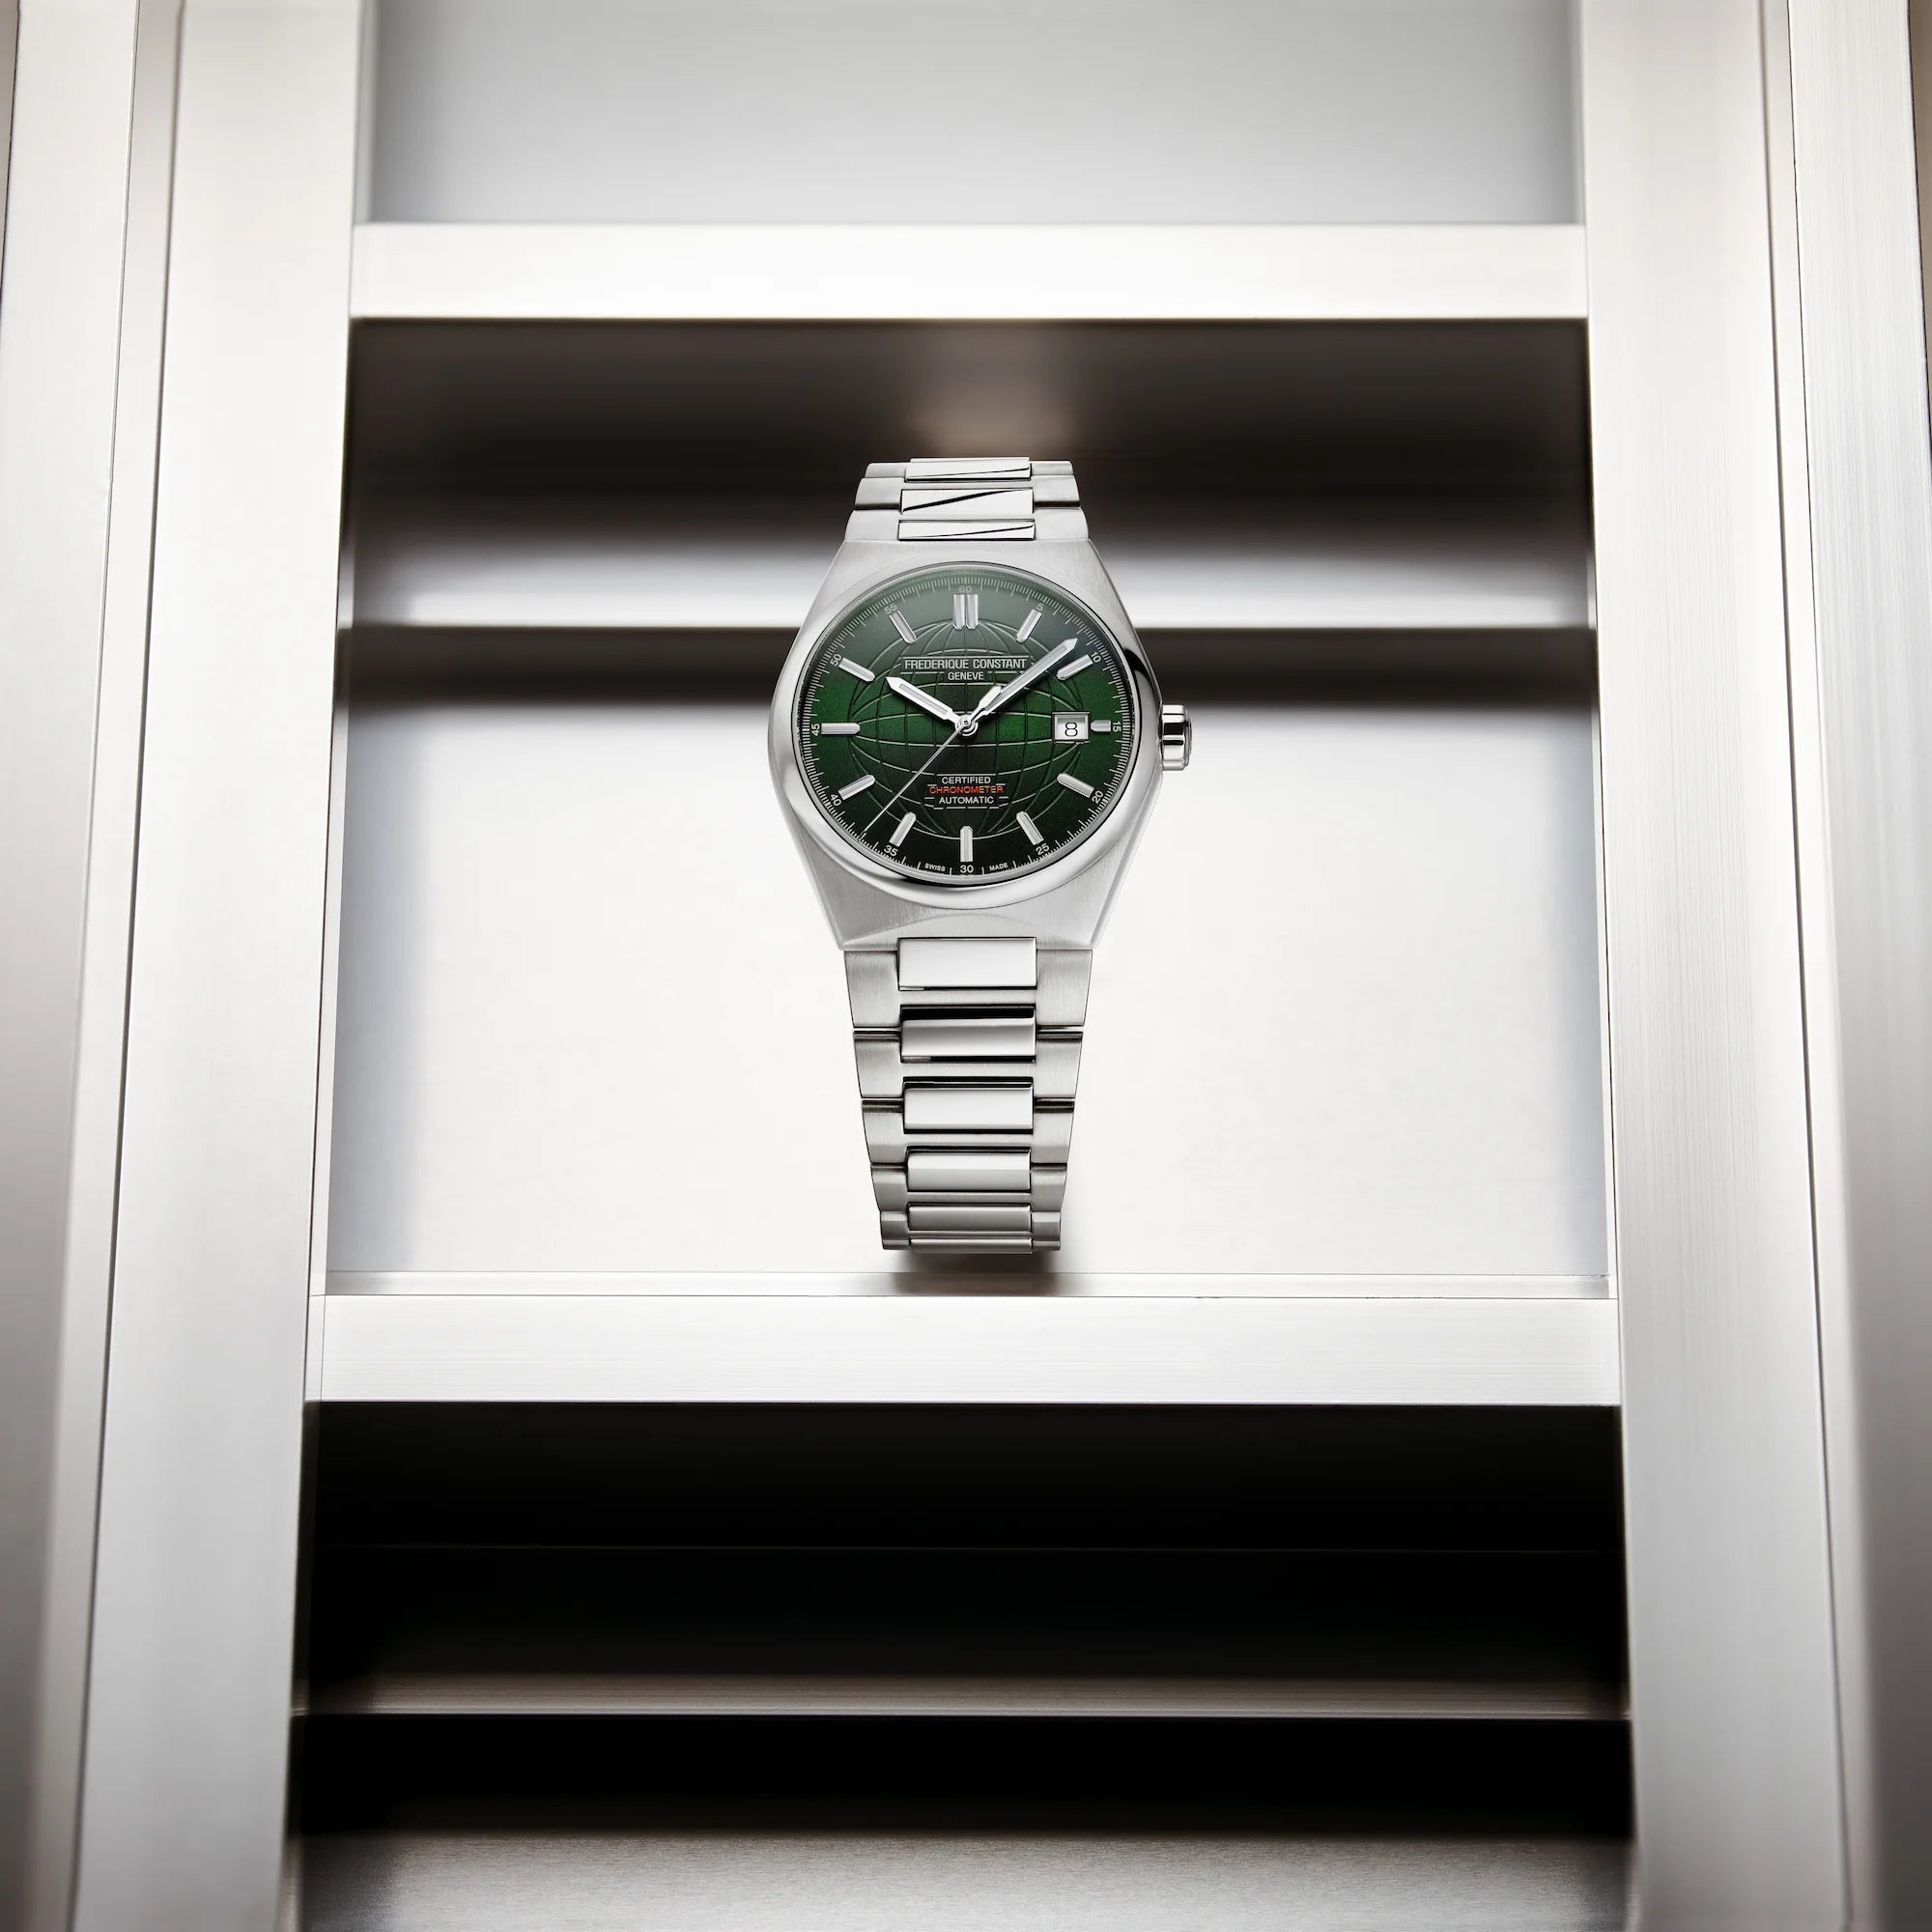 Produktfotografie des Uhren-Modells "Highlife Automatic COSC" mit dem grünen Sonnenschliff Zifferblatt von Frederique Constant